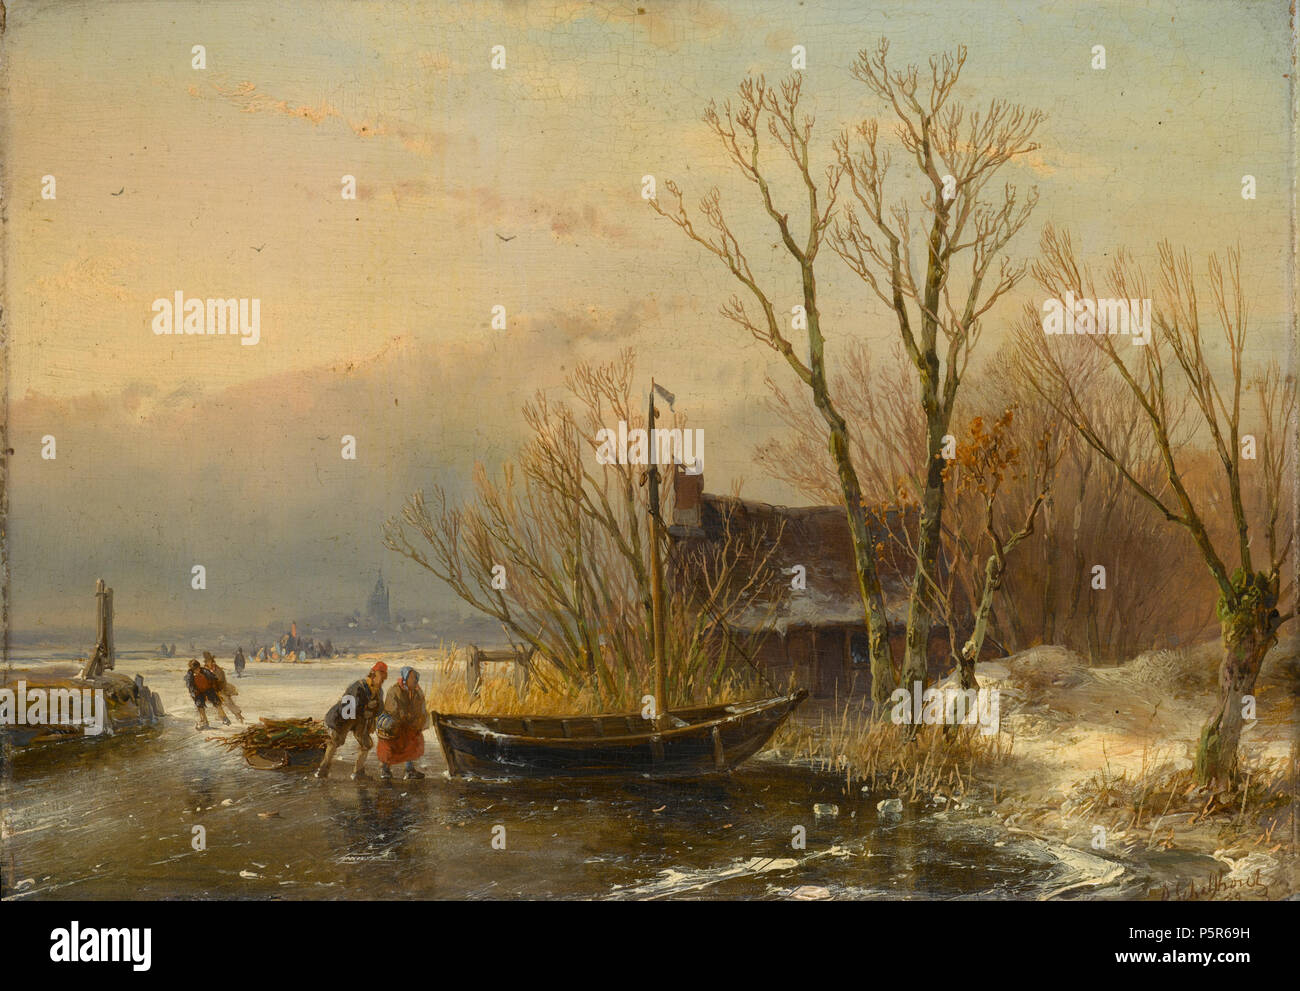 IJsgezicht met houtsprokkelaars 1849. N/A99 Andreas Schelfhout - IJsgezicht met houtsprokkelaars Stockfoto